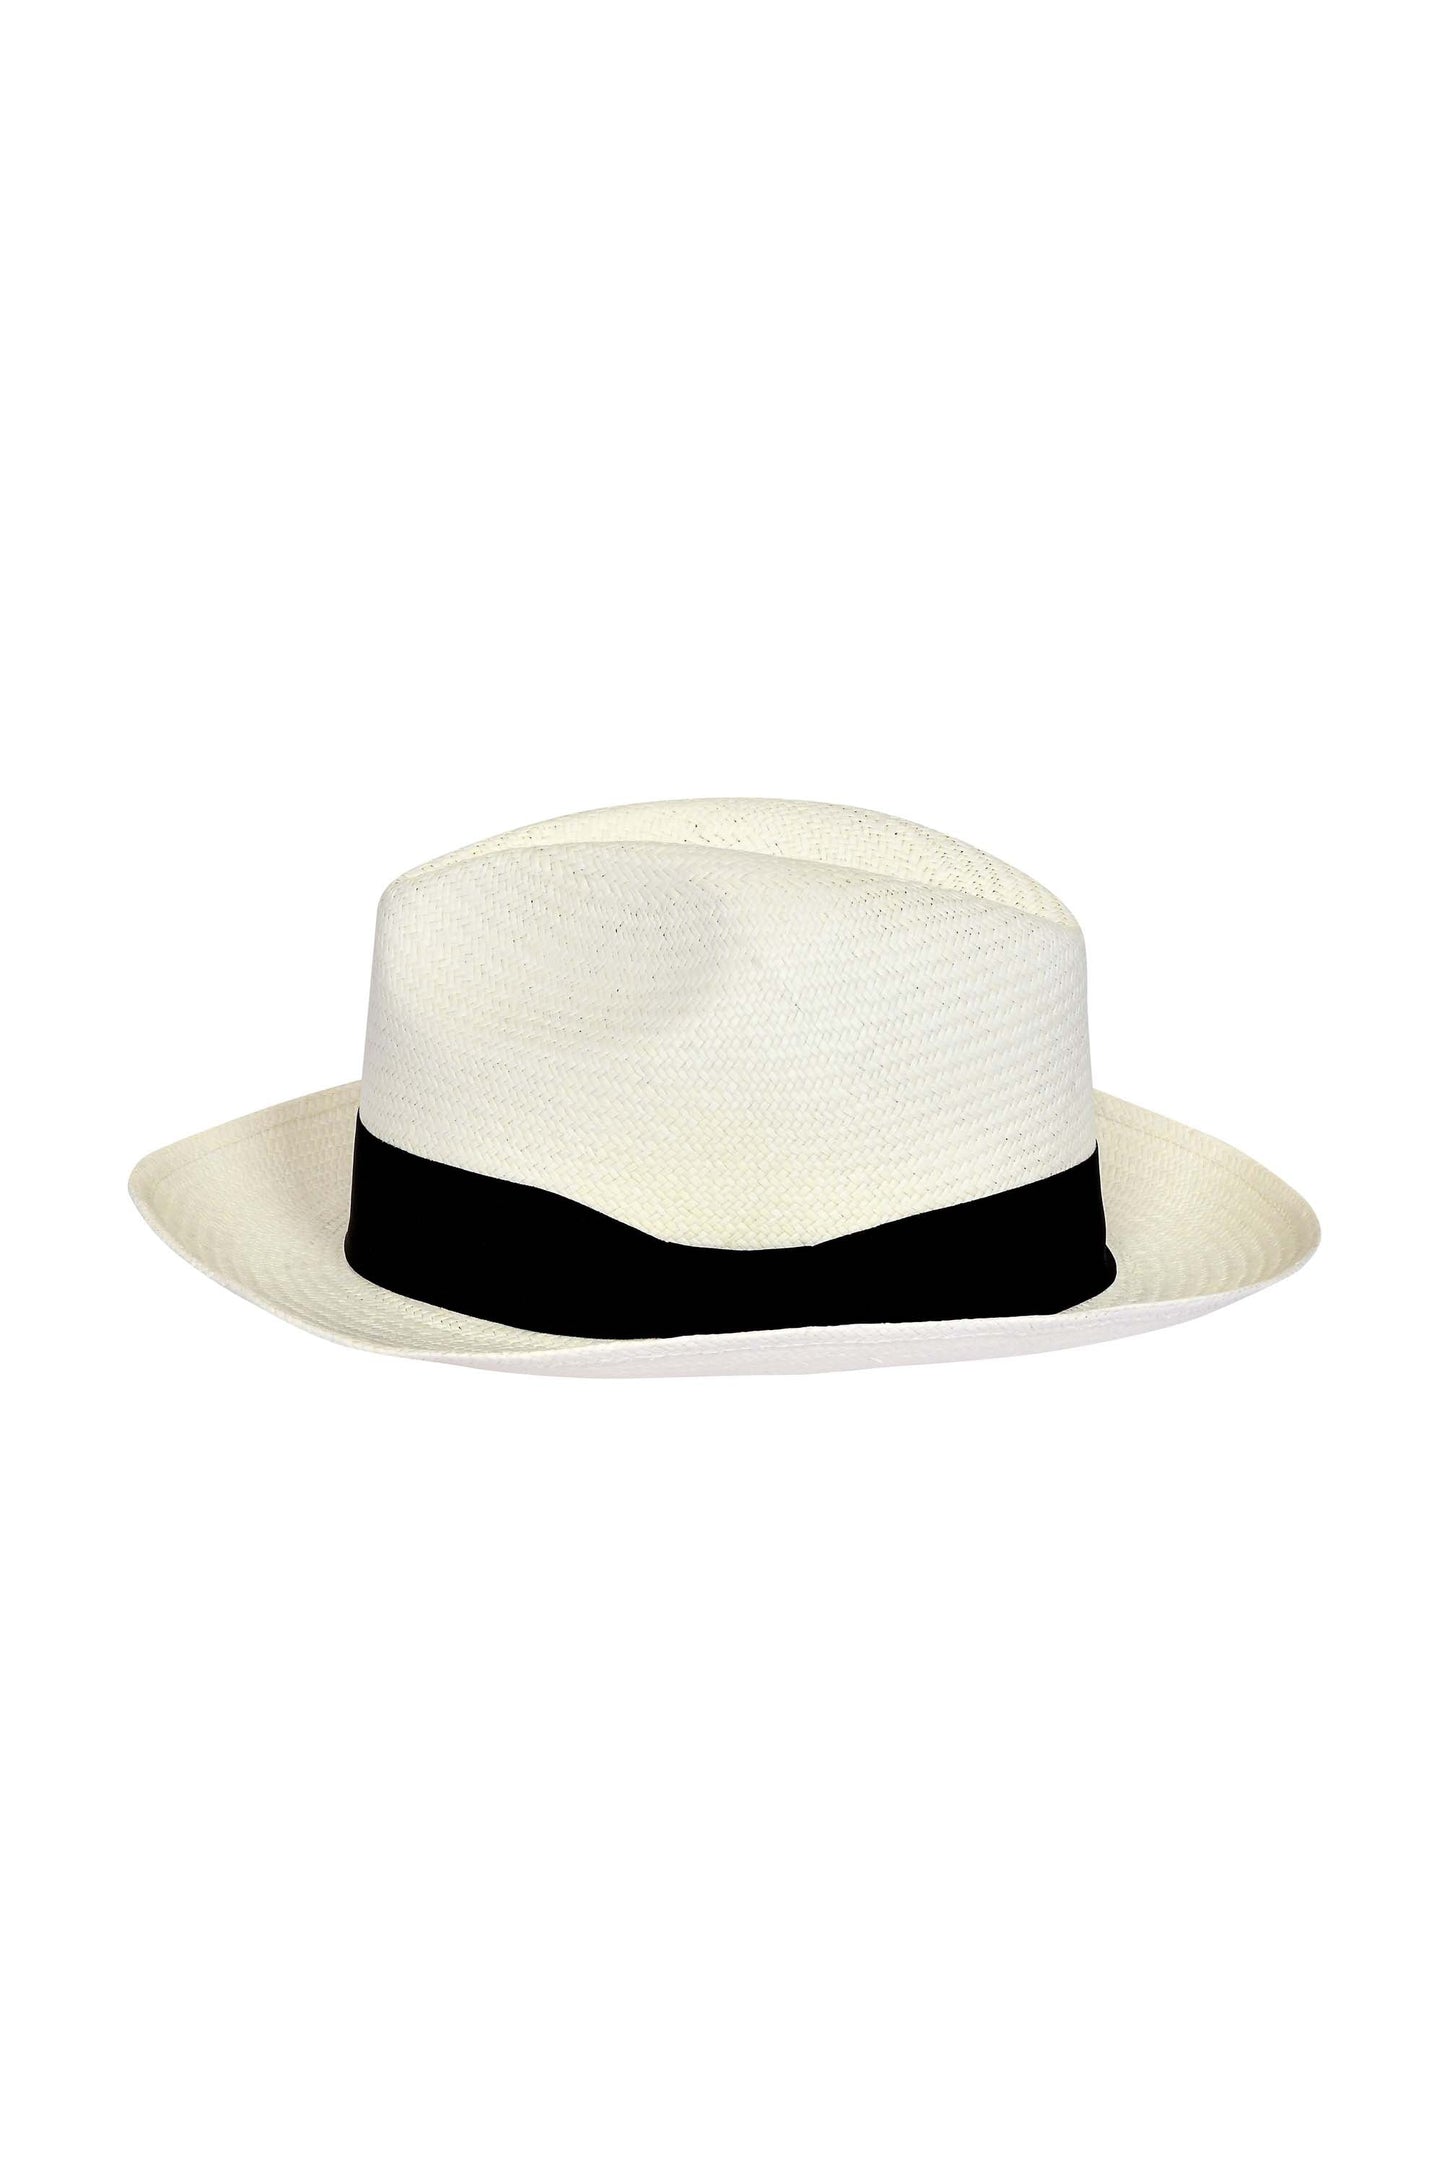 Roosevelt Hat Black